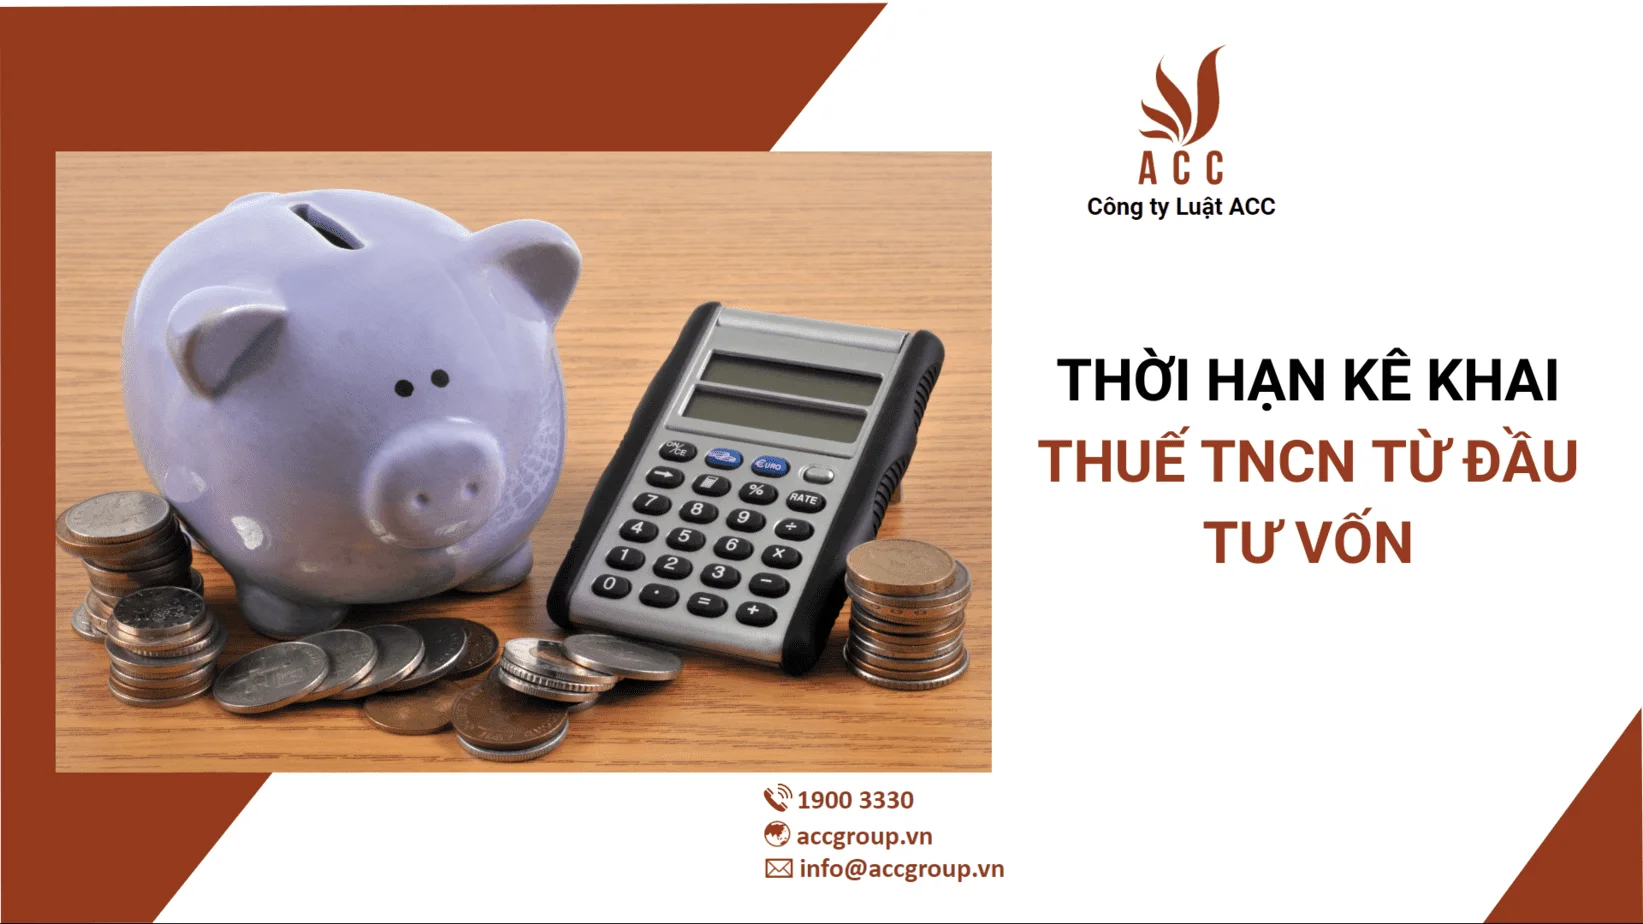 Thời hạn kê khai thuế TNCN từ đầu tư vốn